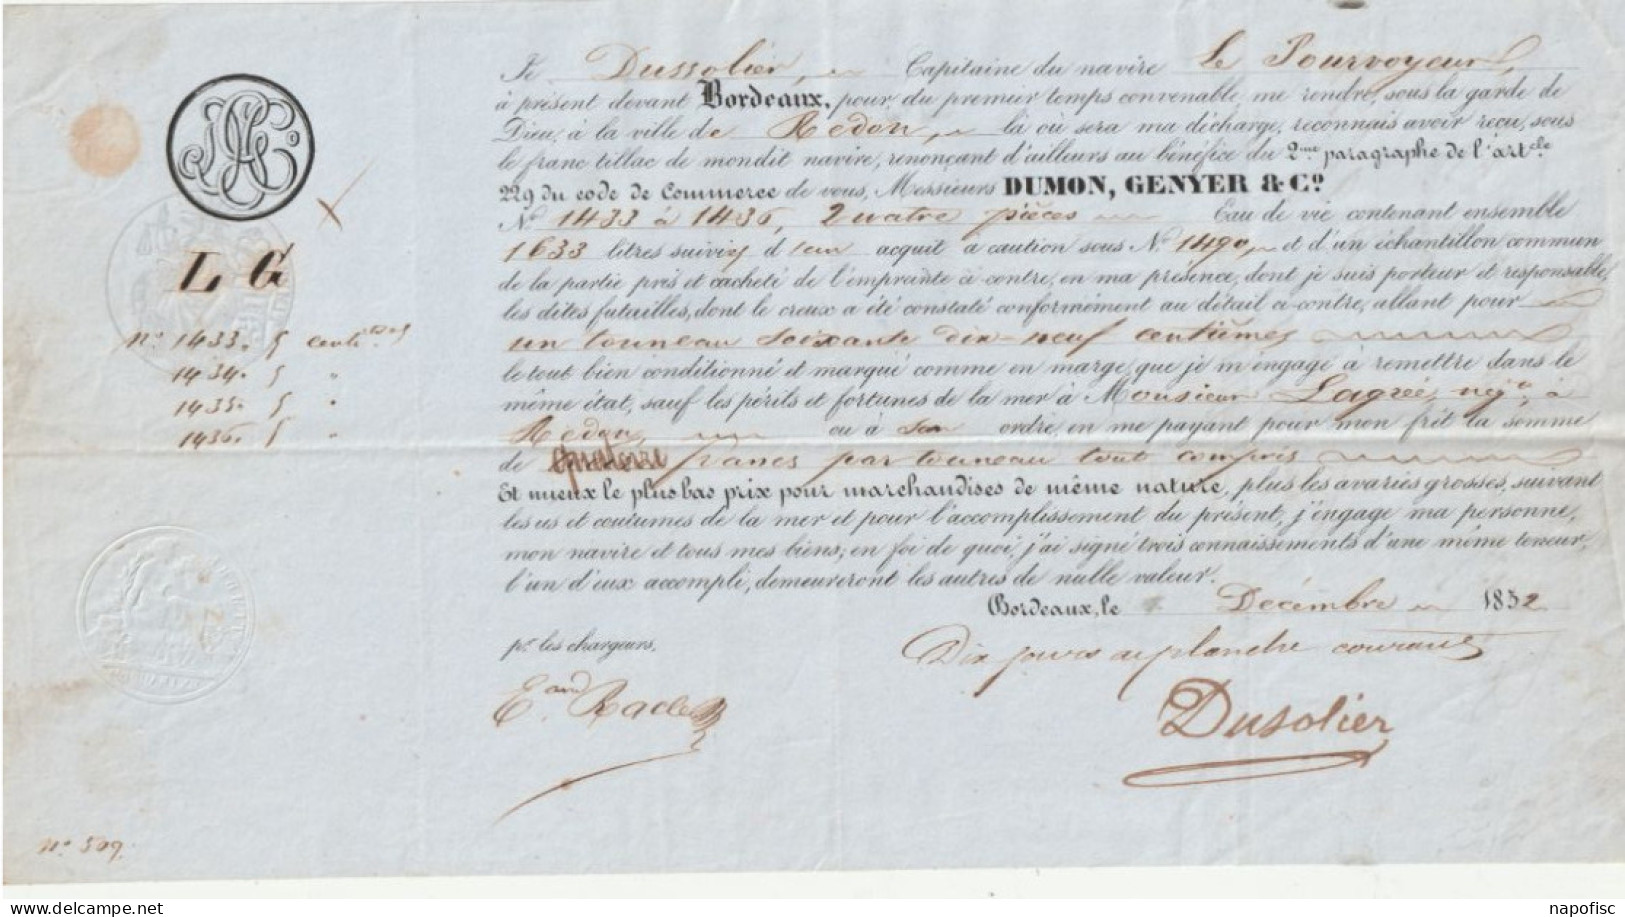 33-Connaissement Dumon, Genyer & Cie....Dussolier..Capitaine Navire Le Pourvoyeur...Bordeaux (Gironde) 1852 - Transporte